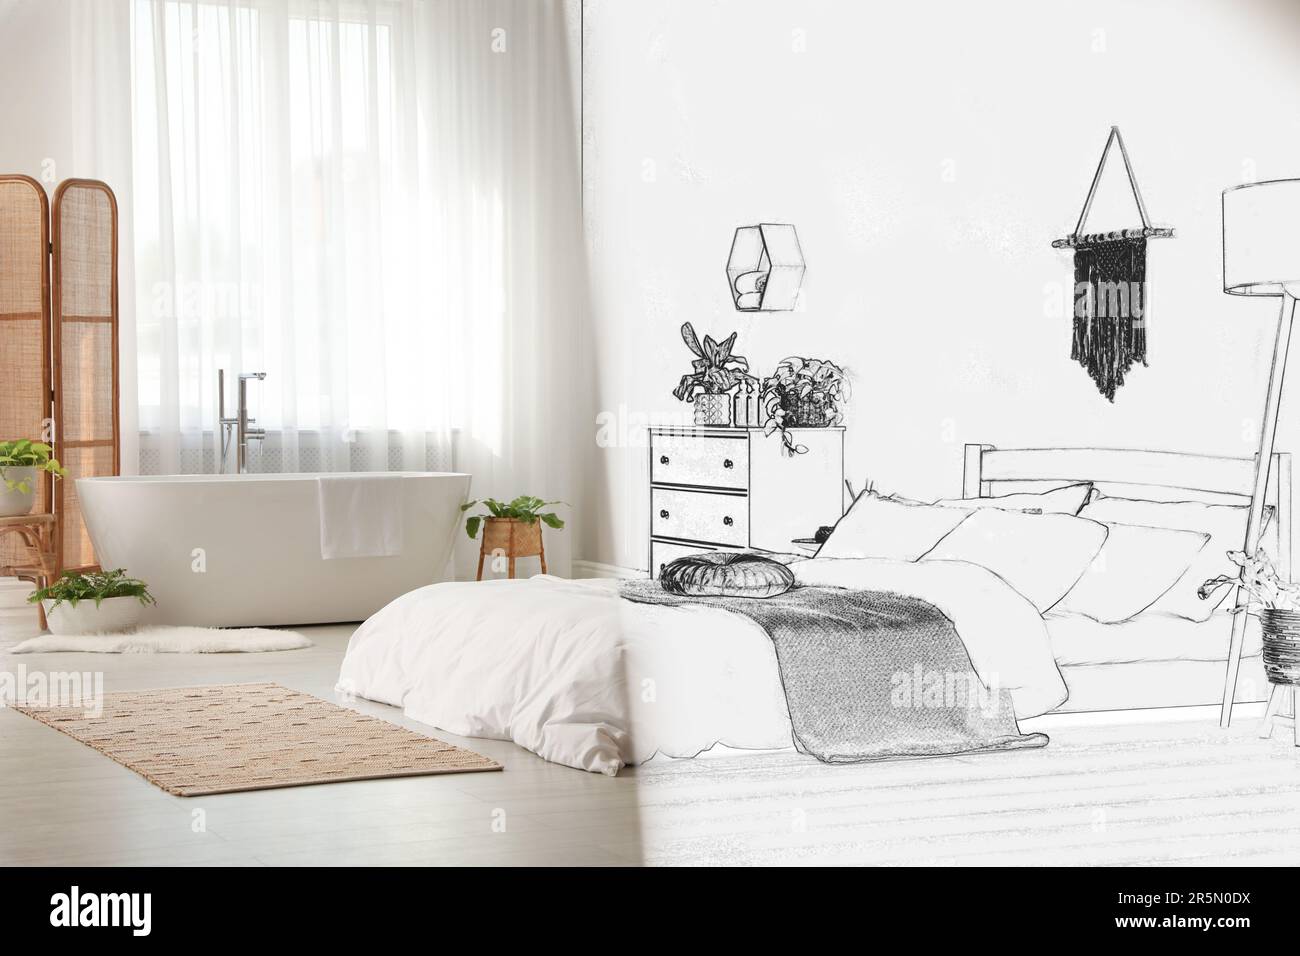 Von der Idee zur Umsetzung. Gemütliches Apartment mit kombiniertem Bad und Schlafbereich. Collage aus Foto und Skizze Stockfoto